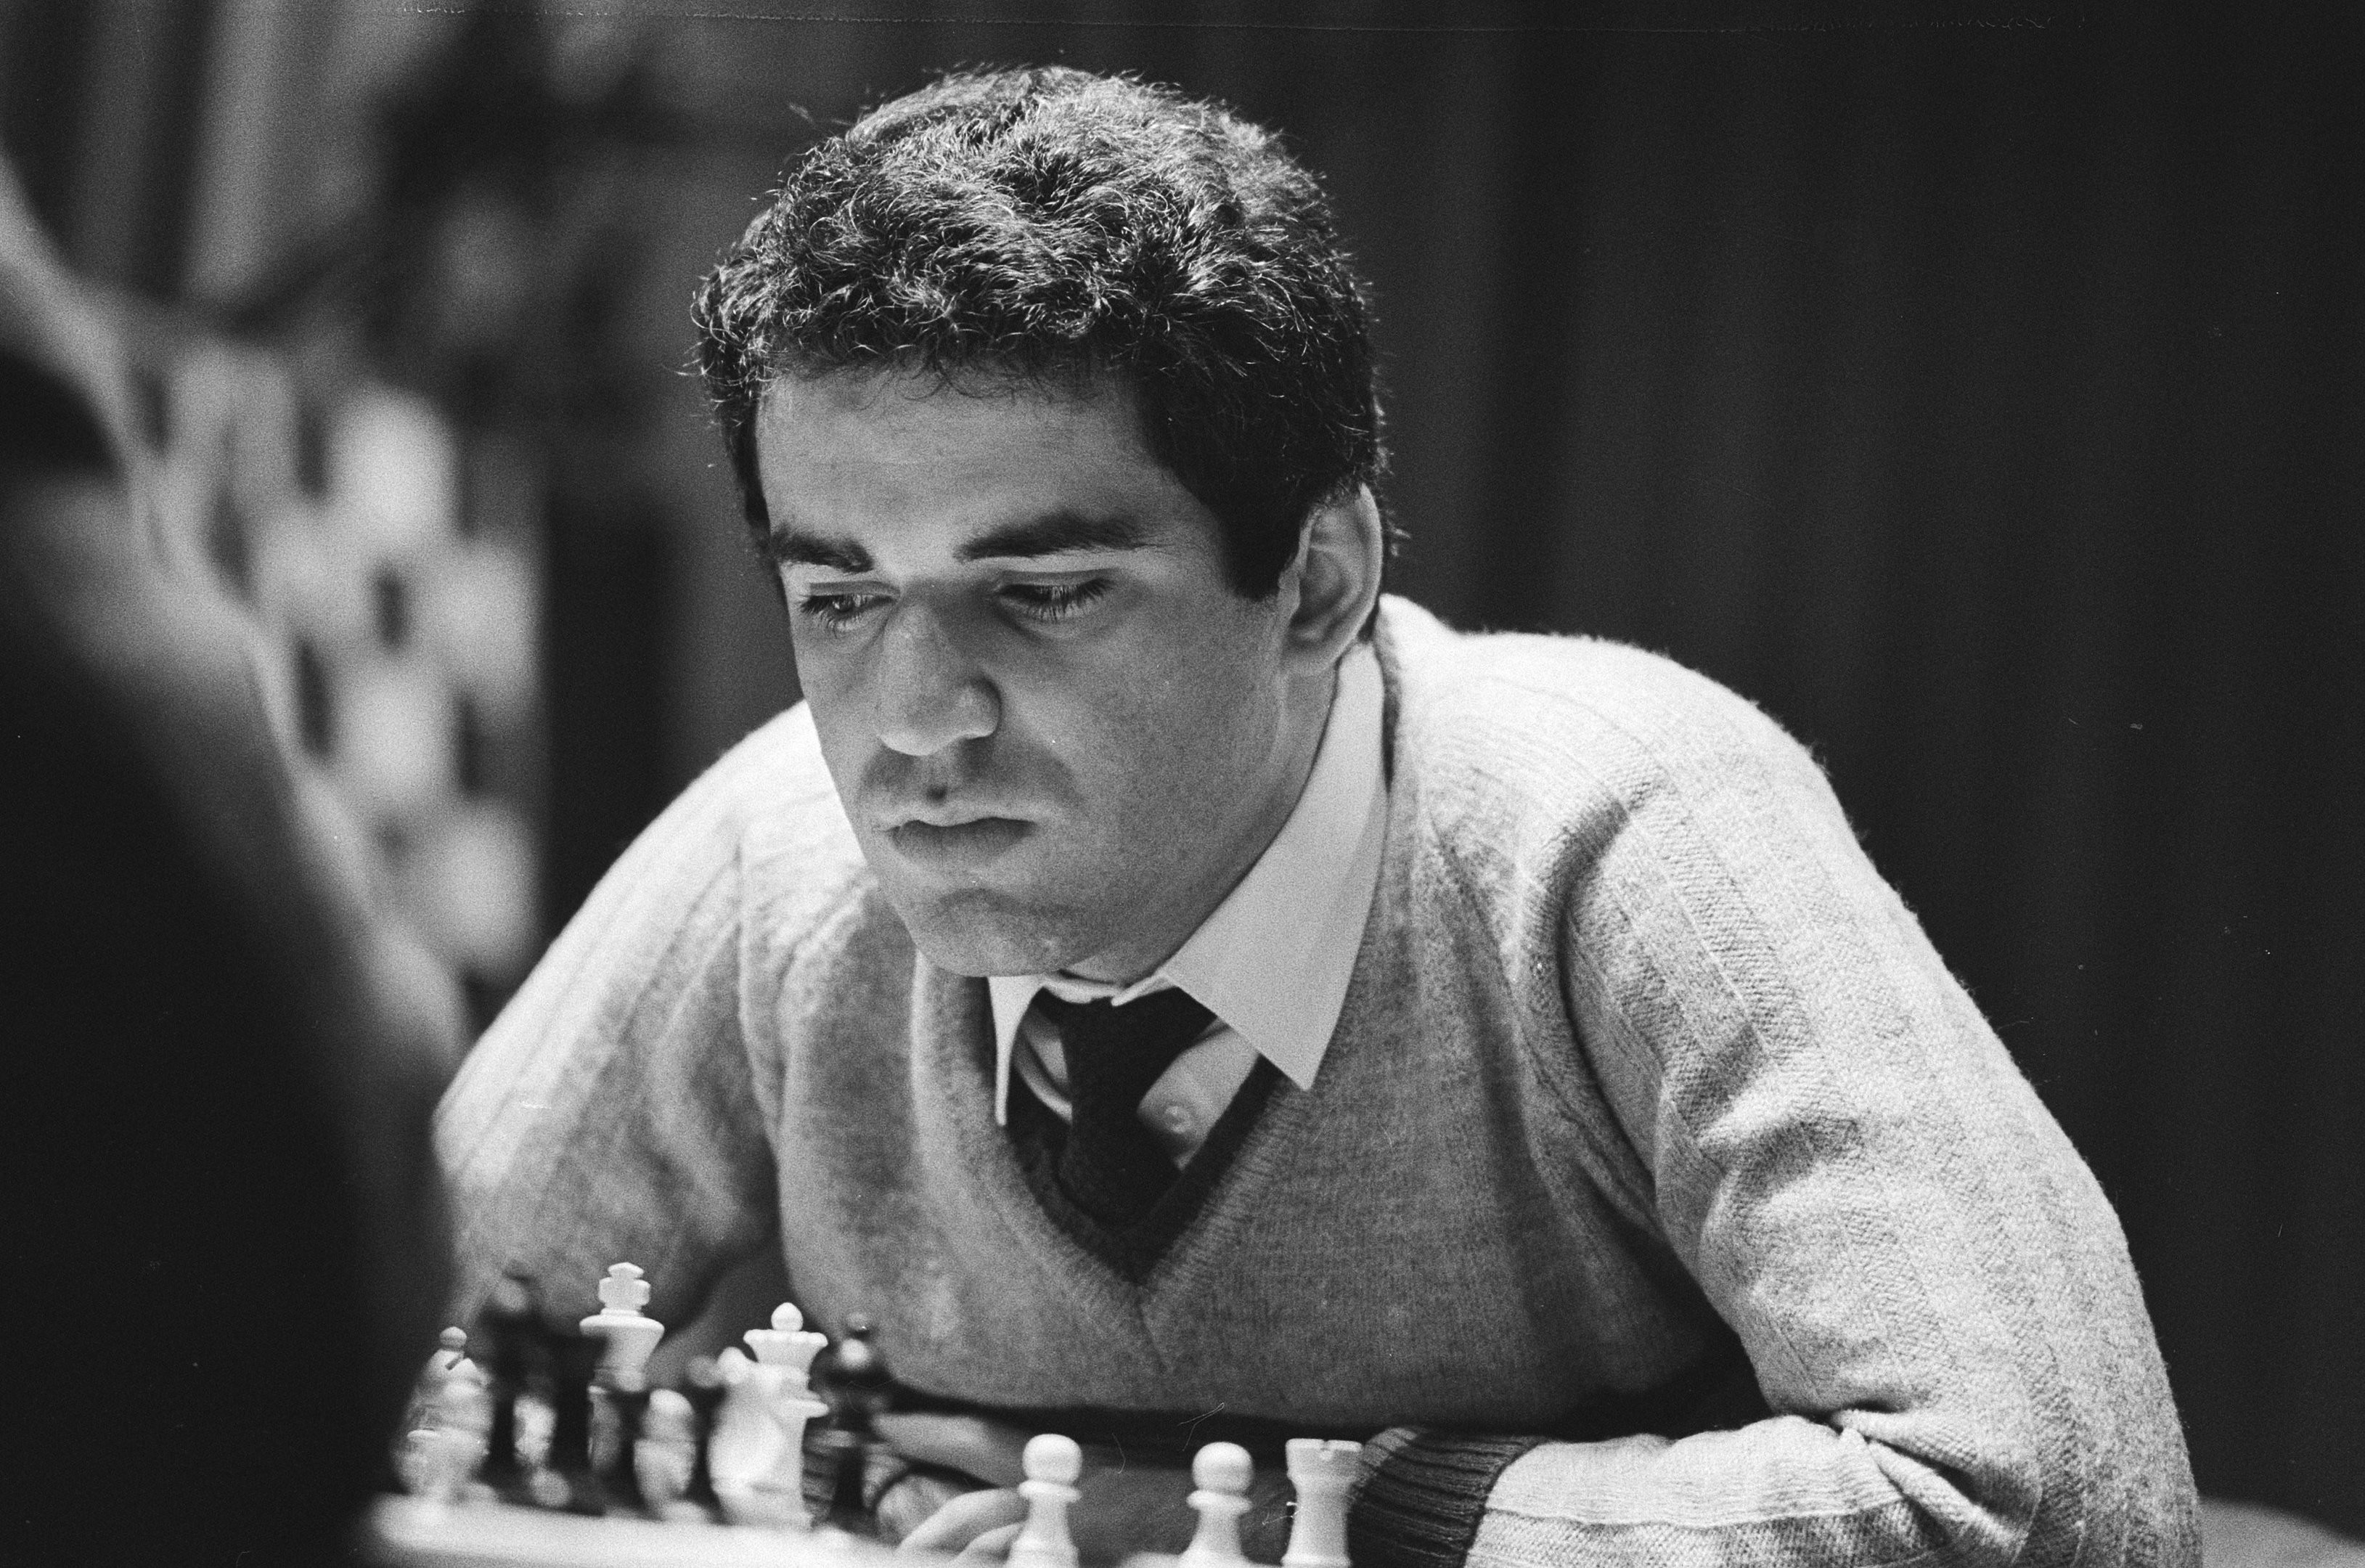 Conheça quem é o grão-mestre de xadrez de 16 anos que derrotou